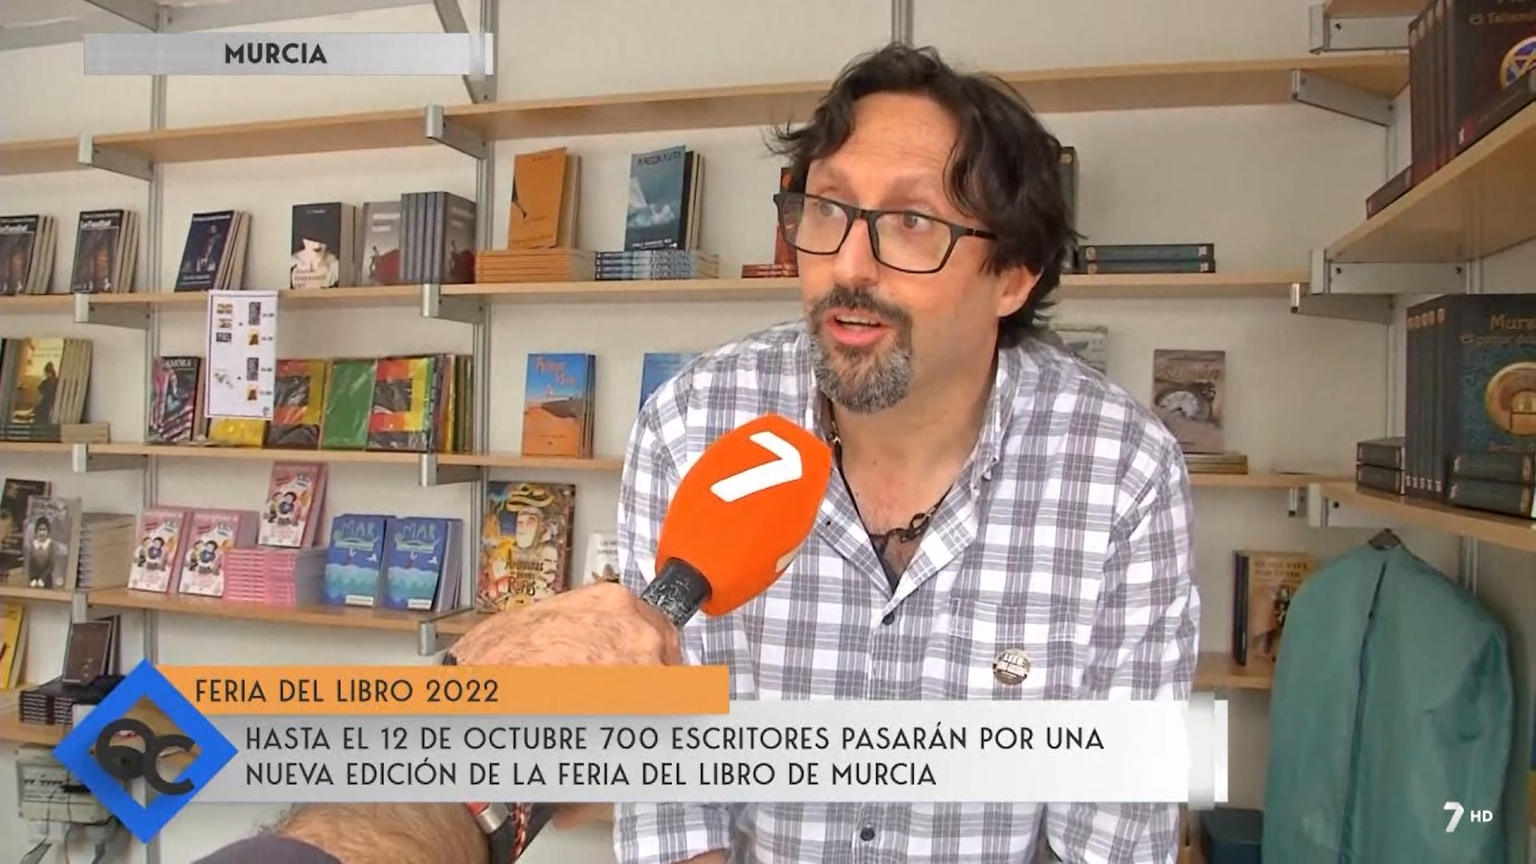 Sergio Reyes en 7TV Región de Murcia, firmando ejemplares de "Mursiya. El pintor del Rey Lobo" en la Feria del libro de Murcia 2022 Quédate Conmigo 7 de octubre de 2022 Dossier de prensa 2022